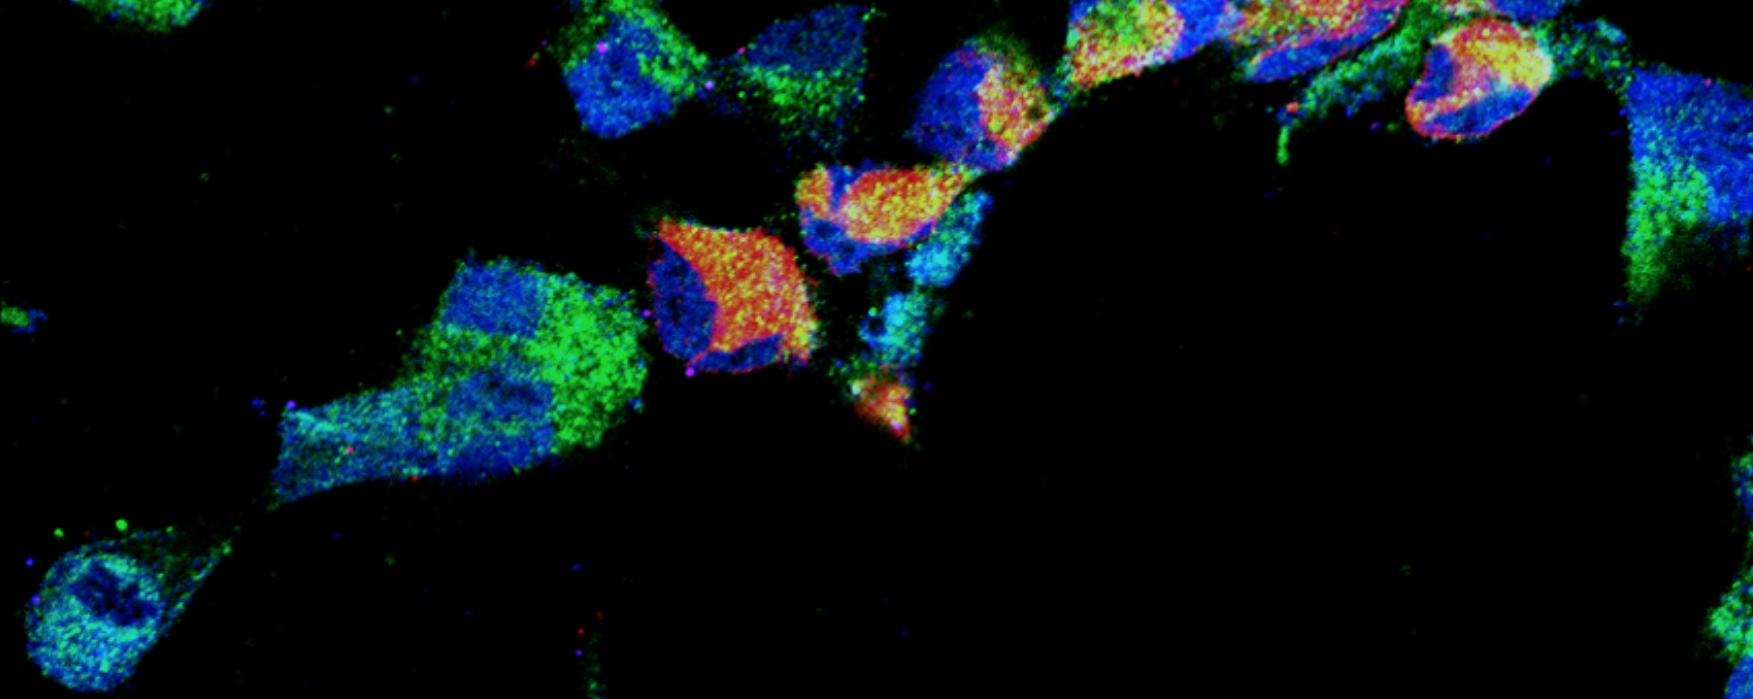 Immunomarquages de progéniteurs neuronaux humains (Nestin,vert; Sox2, bleu) infectés avec le virus ZIKA (NS1, rouge).